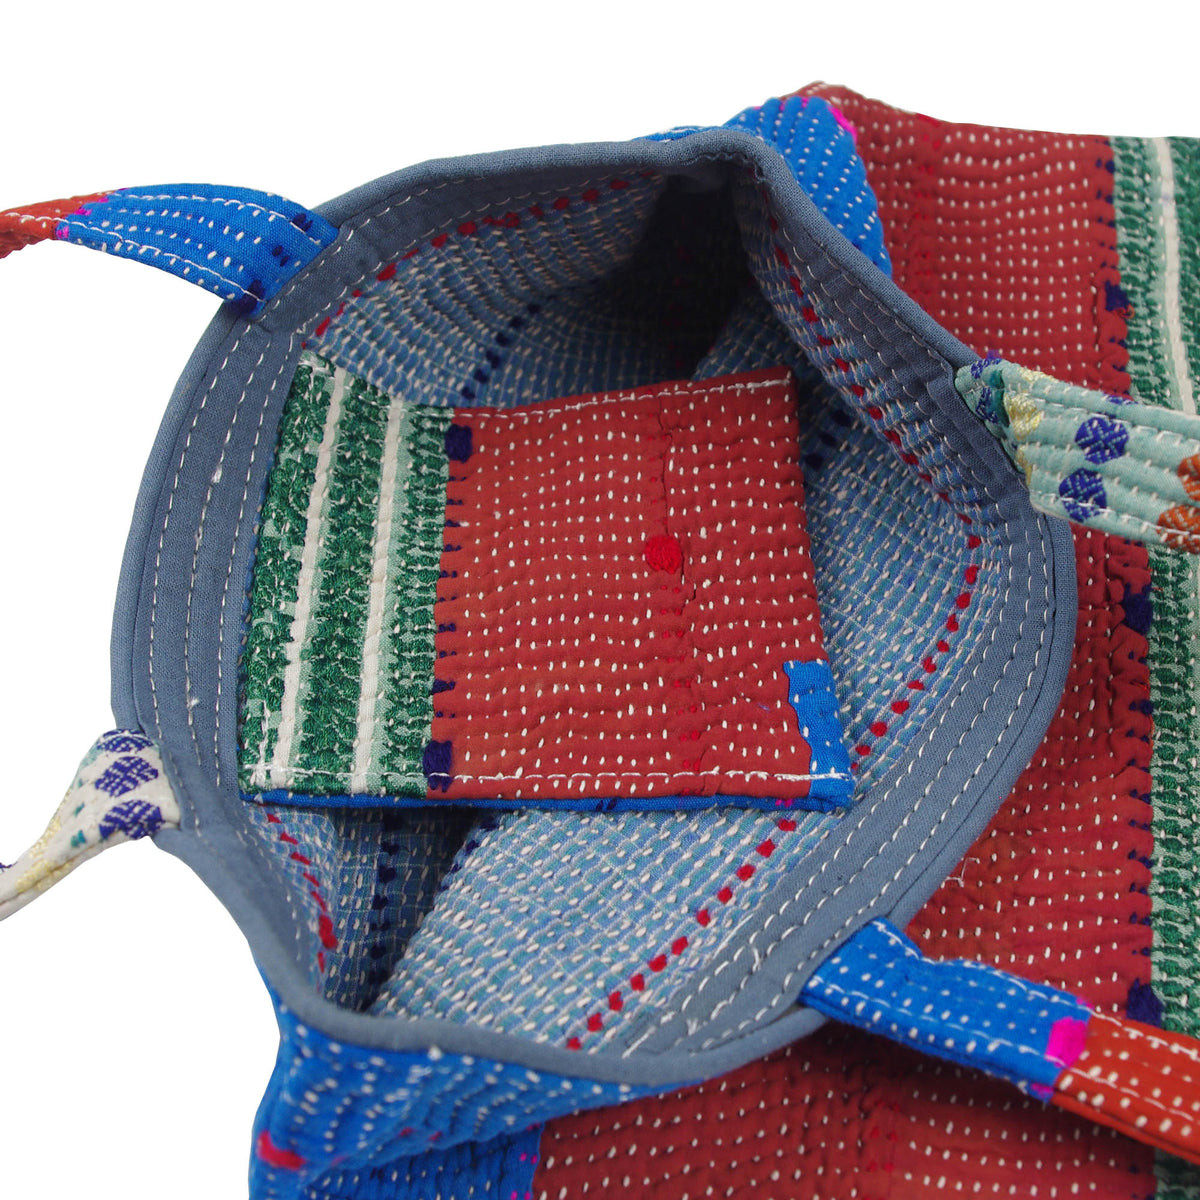 Vintage Fine Kantha Stitched Cotton Tote Bag - Multicolour